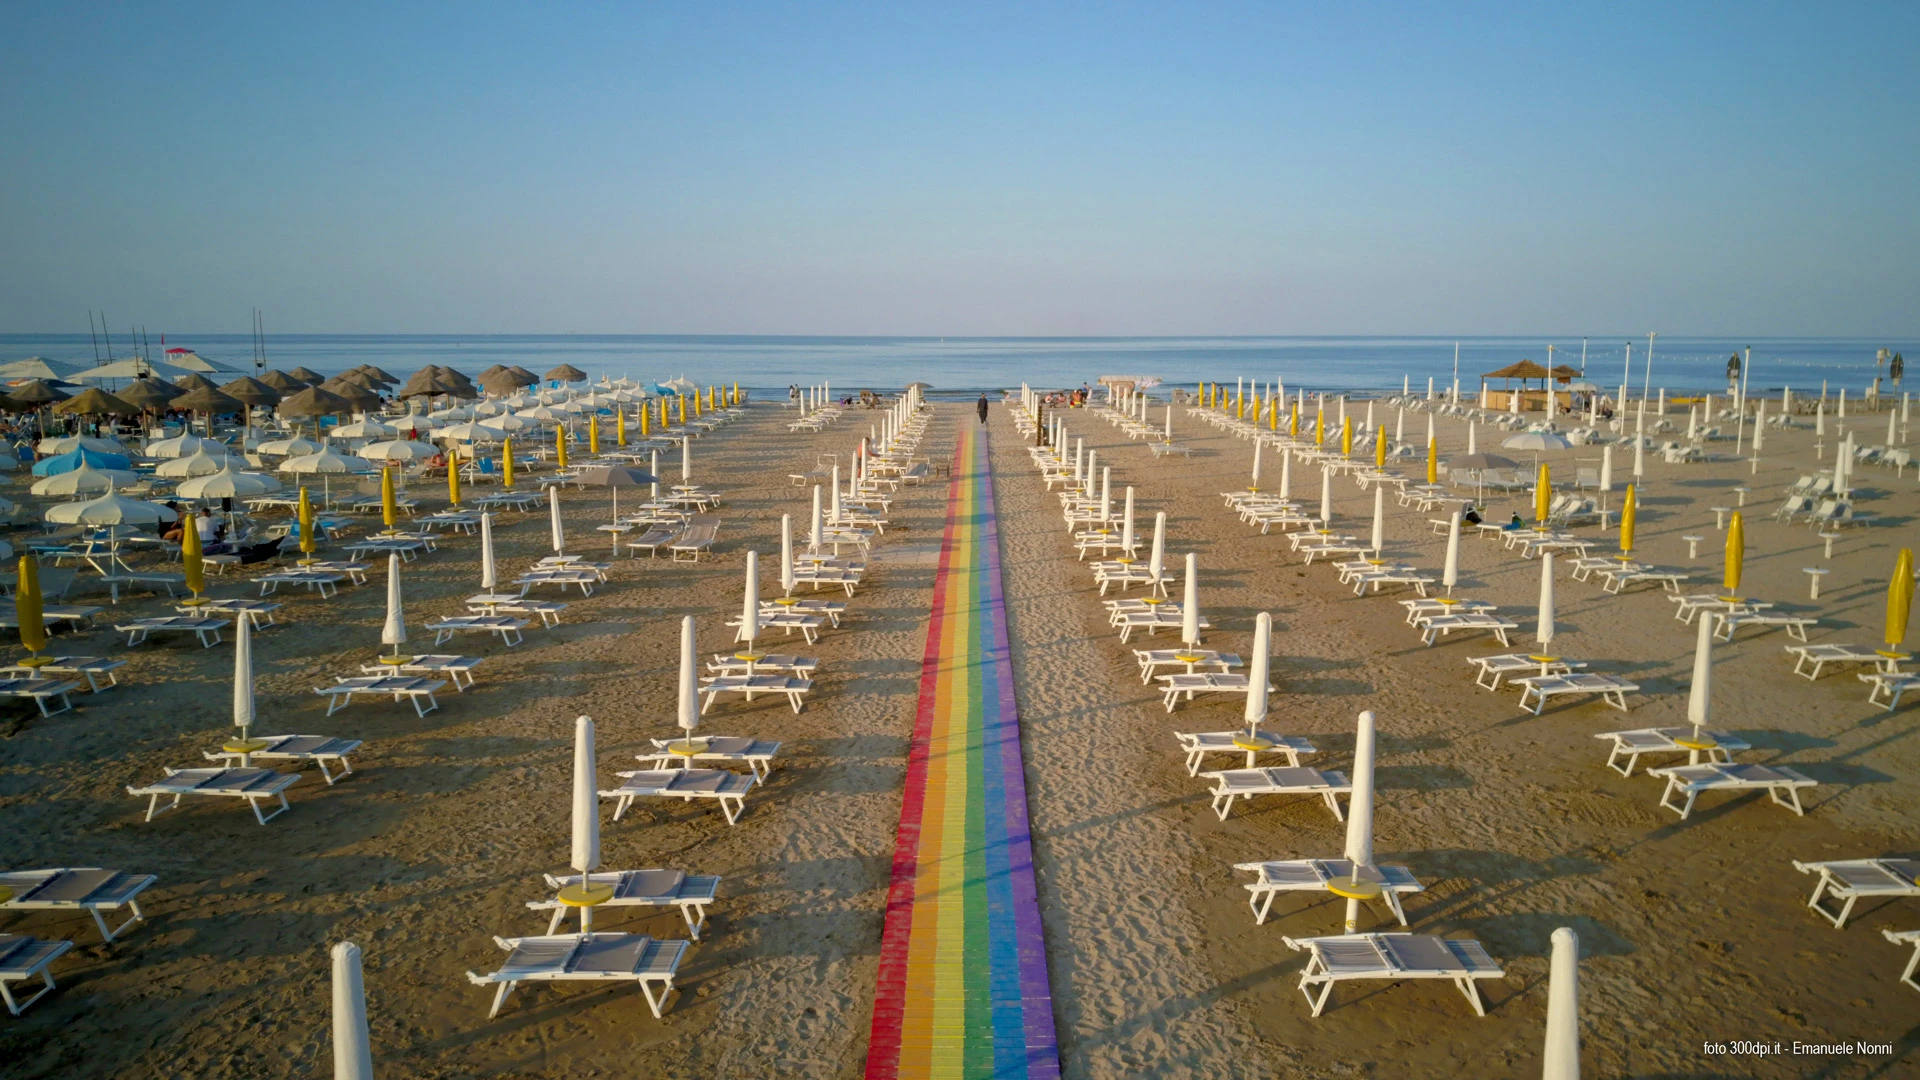 Spiaggia LGBTQ – Rimini – La Community 27 – foto Emanuele Nonni